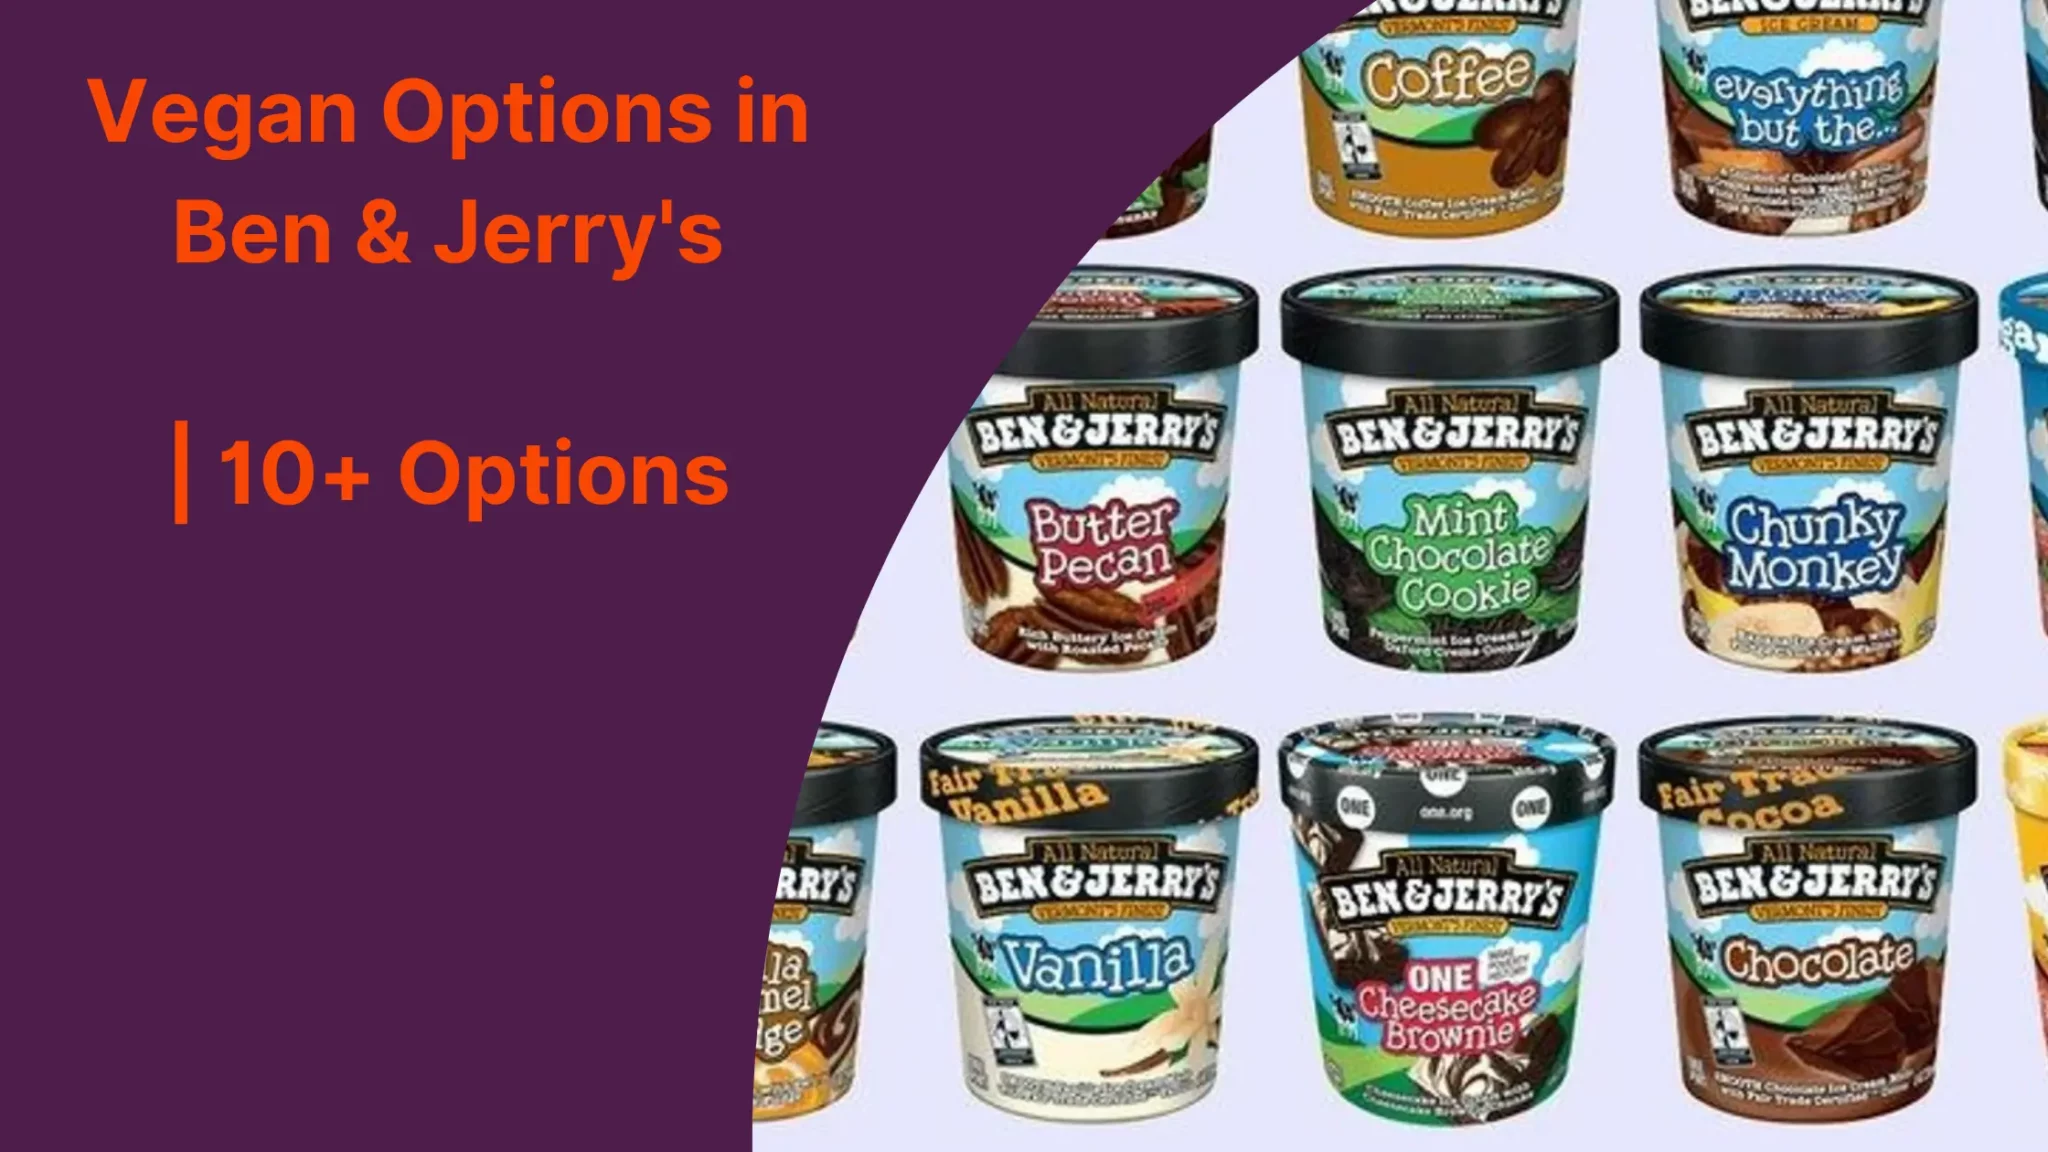 Vegan Options in Ben & Jerry's